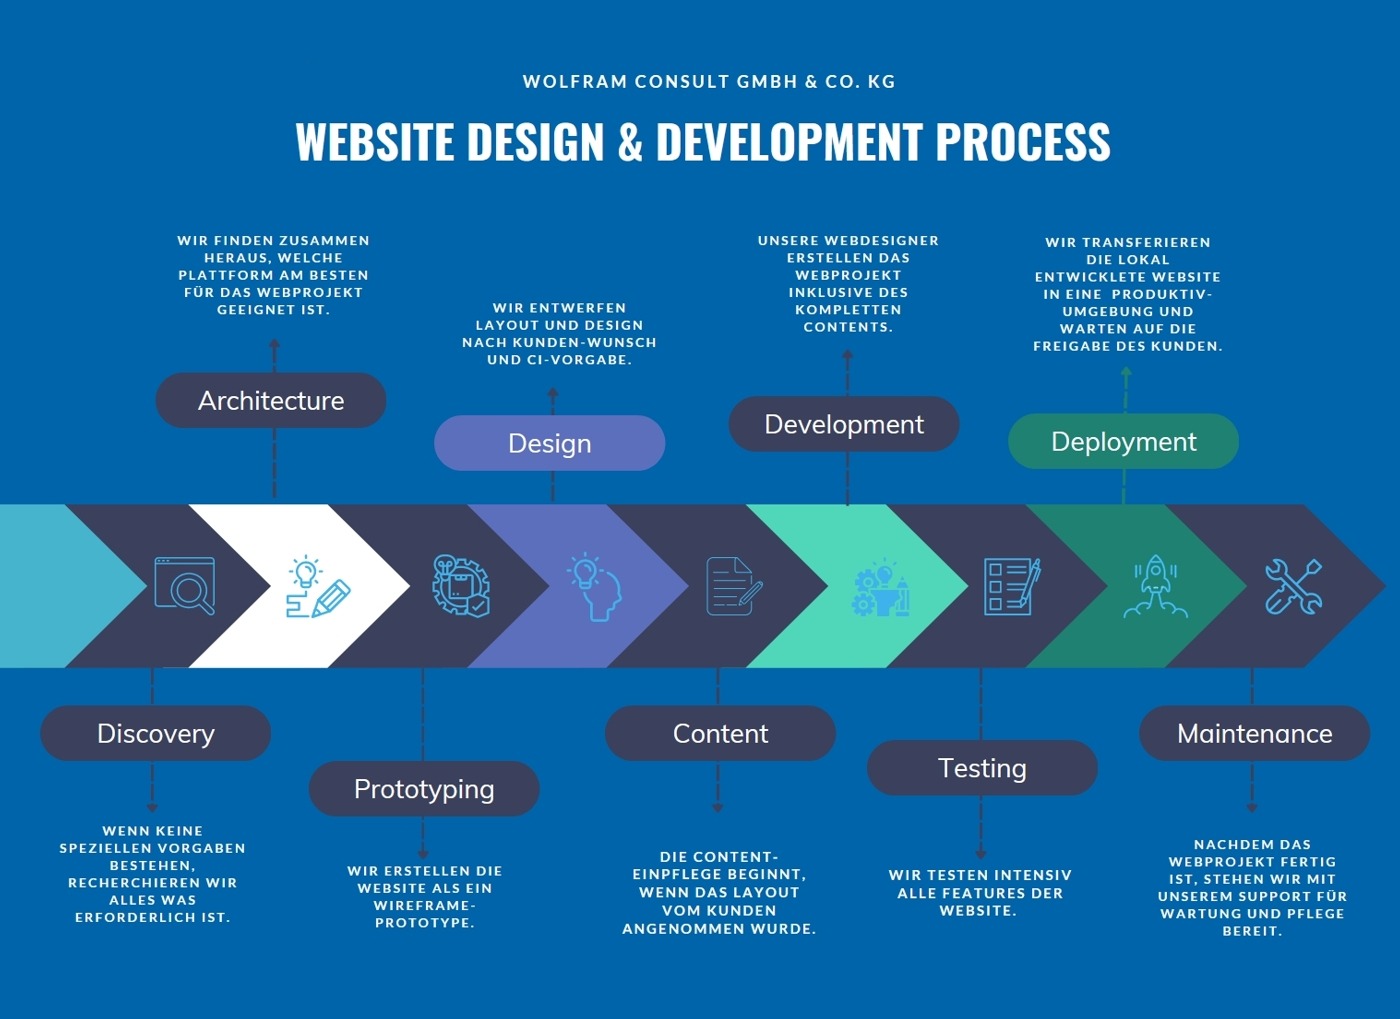 Unsere Reise beim Webdesign